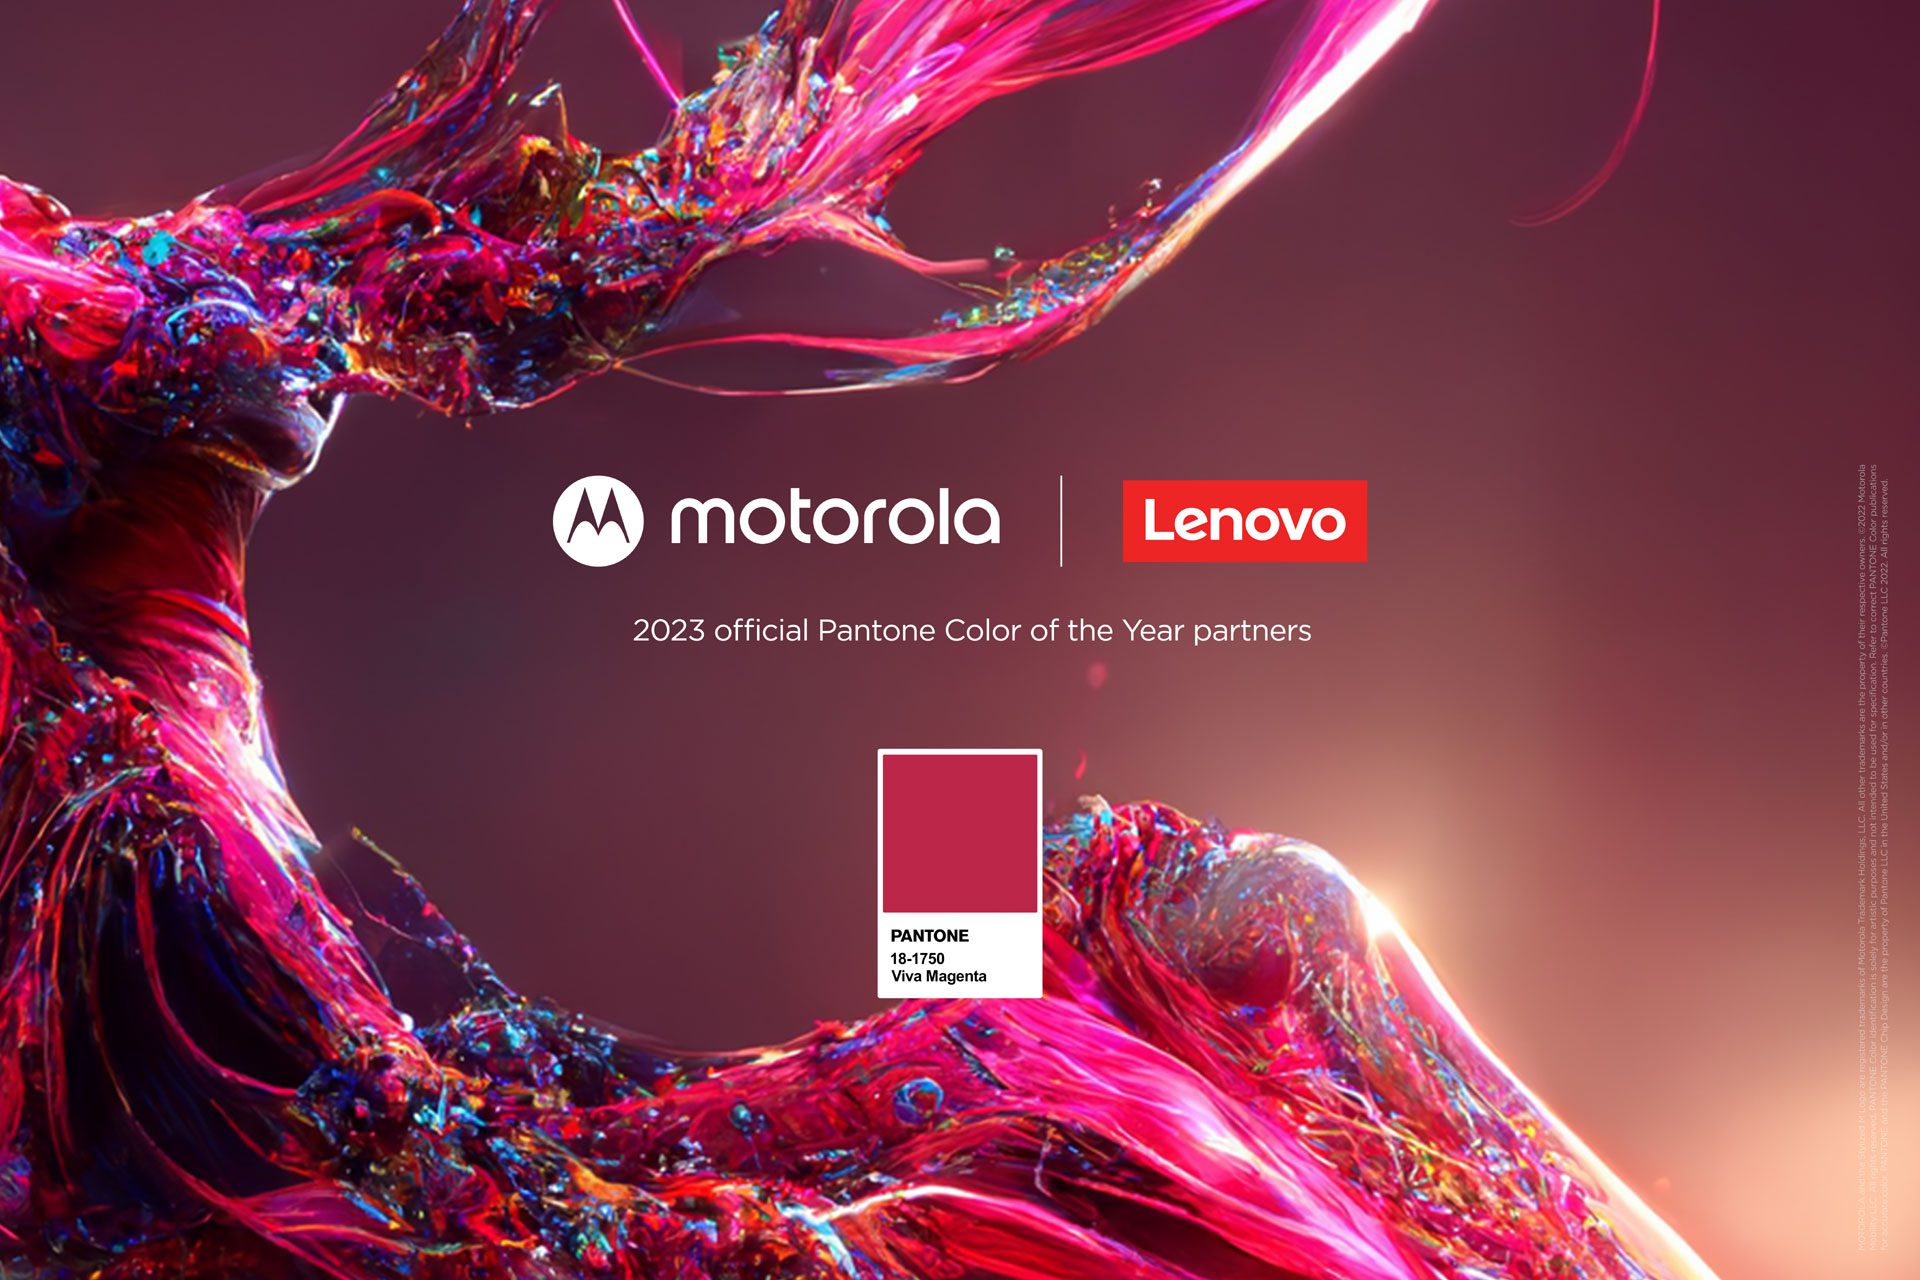 Motorola lanza edición especial del motorola edge 30 fusion en el Pantone Color of the Year 2023, Viva Magenta